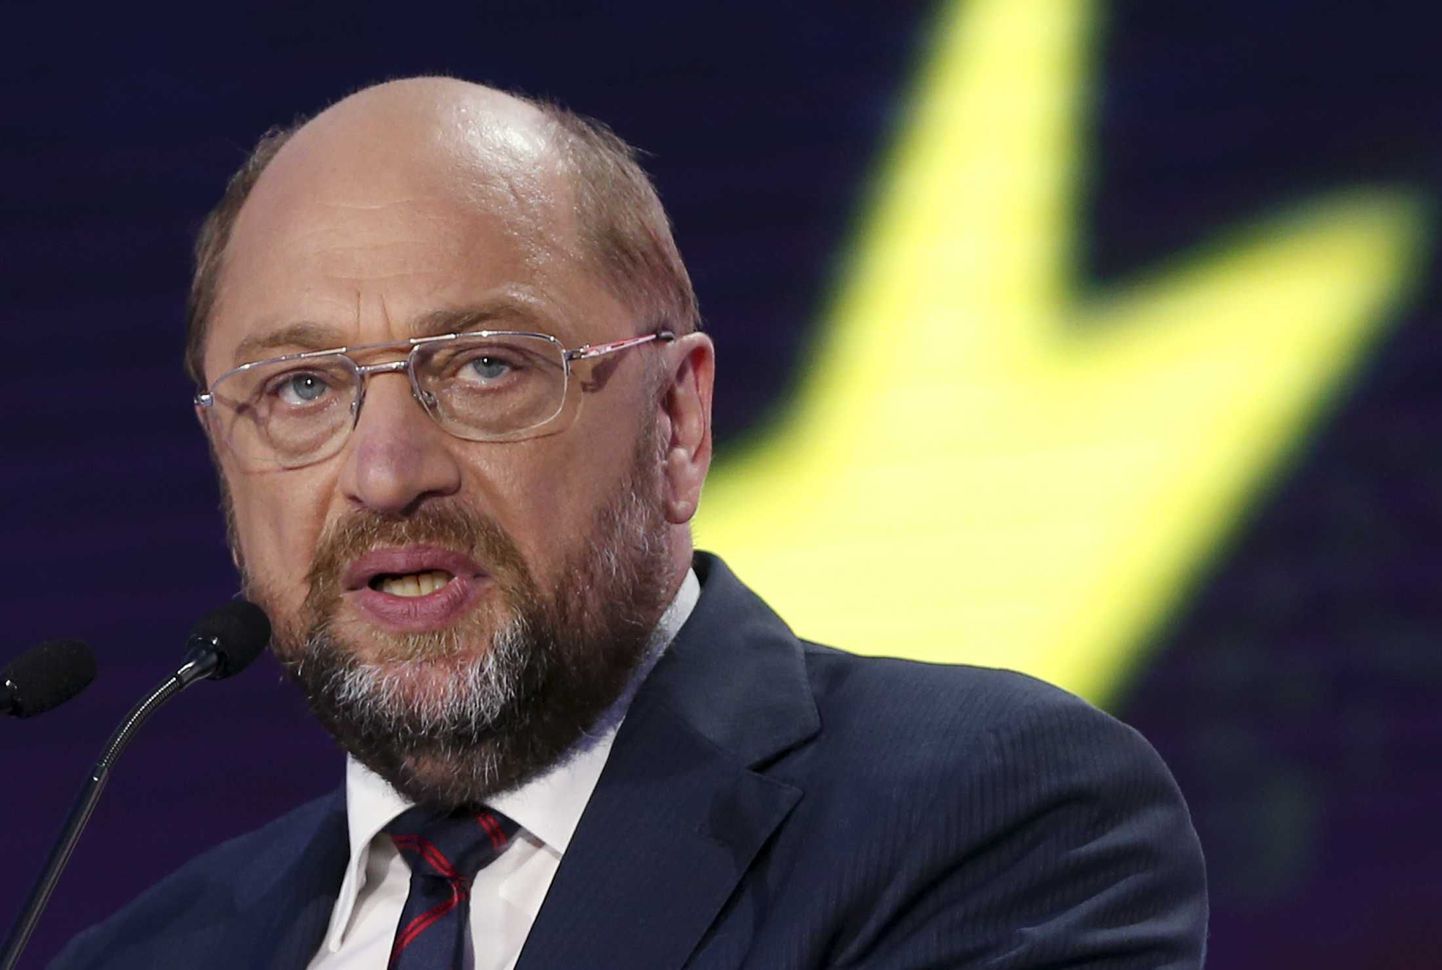 Martin Schulzi võimalused saada sotside parteipere kandidaadina Euroopa Komisjoni presidendiks paistavad praegu ahtana.